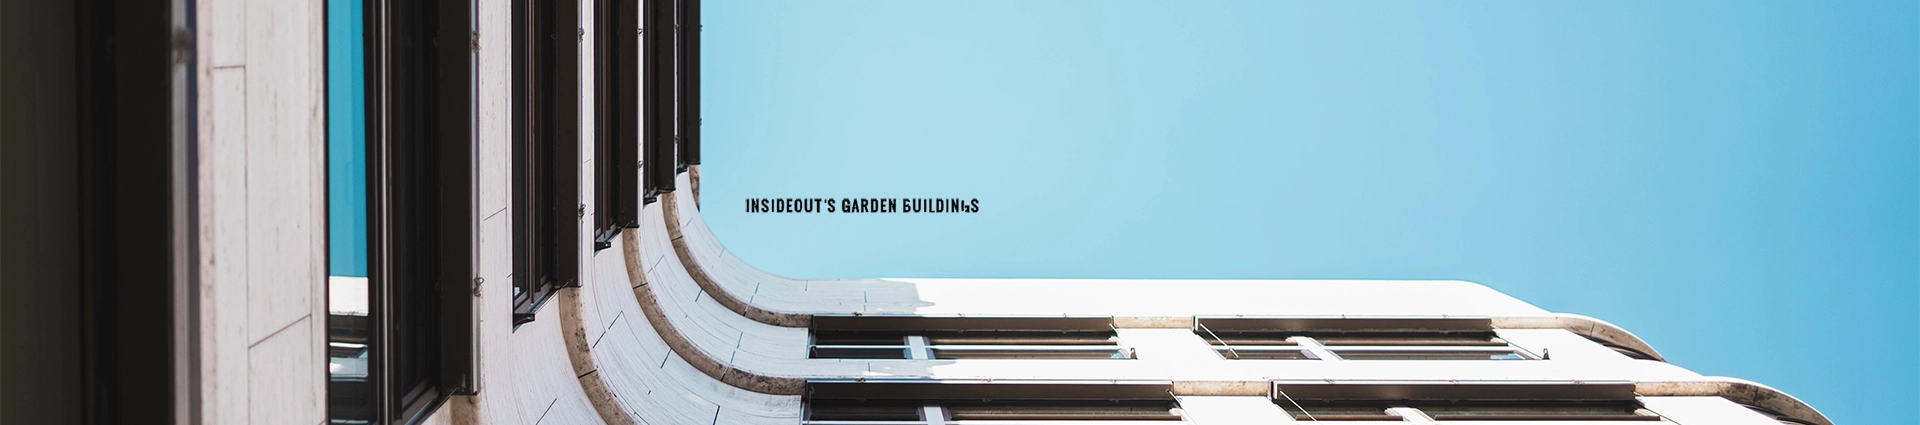 InsideOut Buildings Ltd